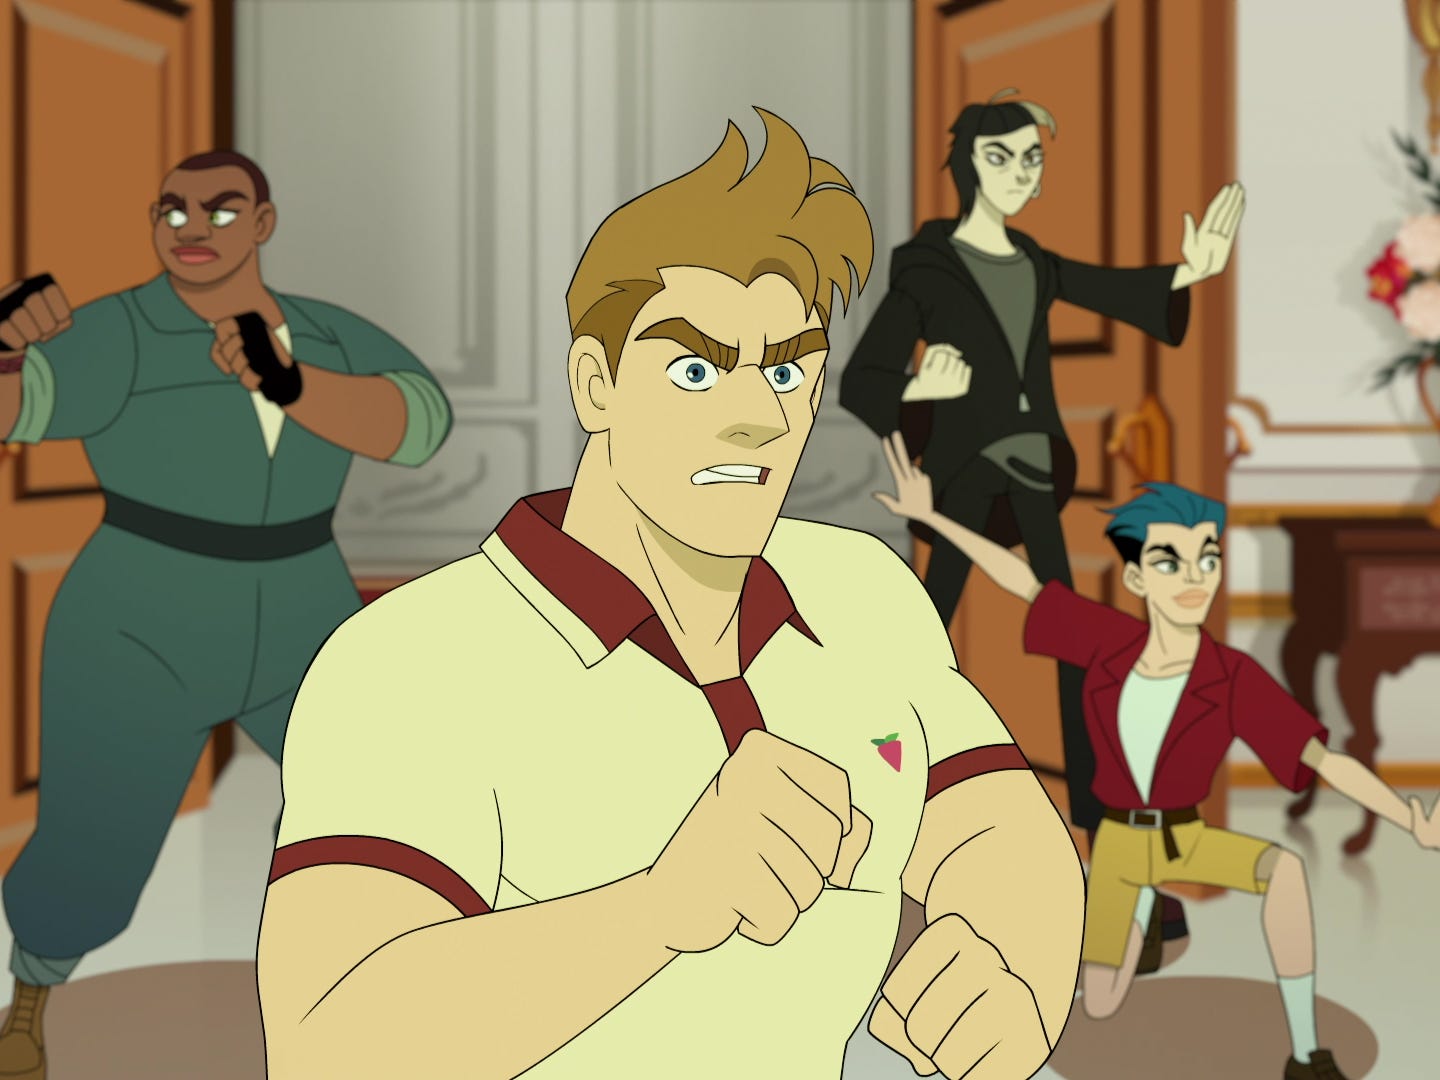 Vier animierte Geheimagenten stürmen in einen Raum: eine Butch-Frau im Blaumann, ein Mann im Poloshirt, eine Frau in schwarz-grauer Kleidung und ein Mann in Shorts und blau gefärbten Haaren